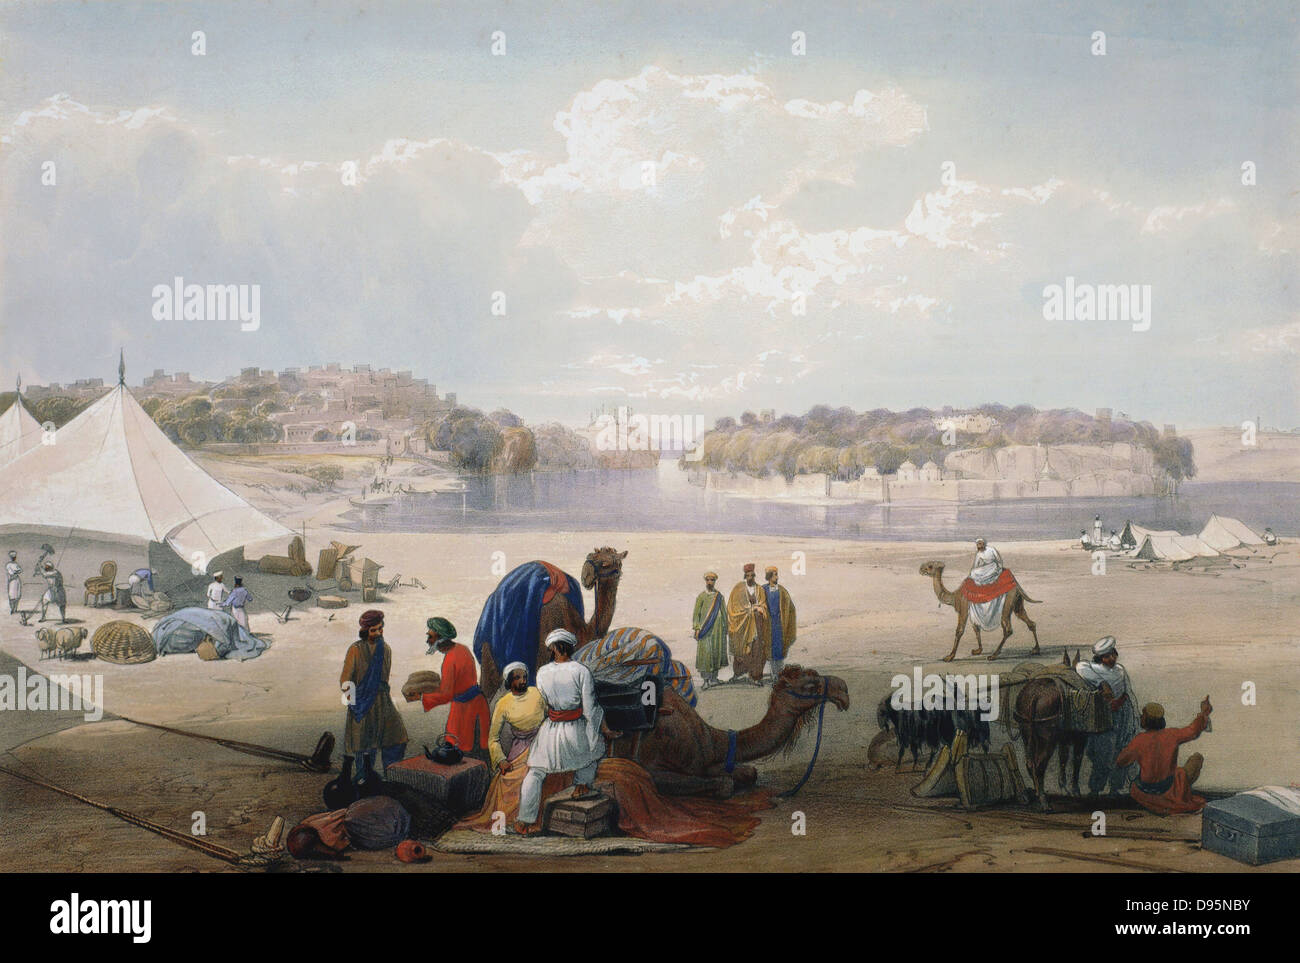 Première Guerre Anglo-afghane 1838-1842. En vertu de l'armée britannique canvas sur Roree sur l'Indus. De J Atkinson 'Sketchs en Afghanistan' Londres 1842. Lithographie en couleur à la main. Banque D'Images